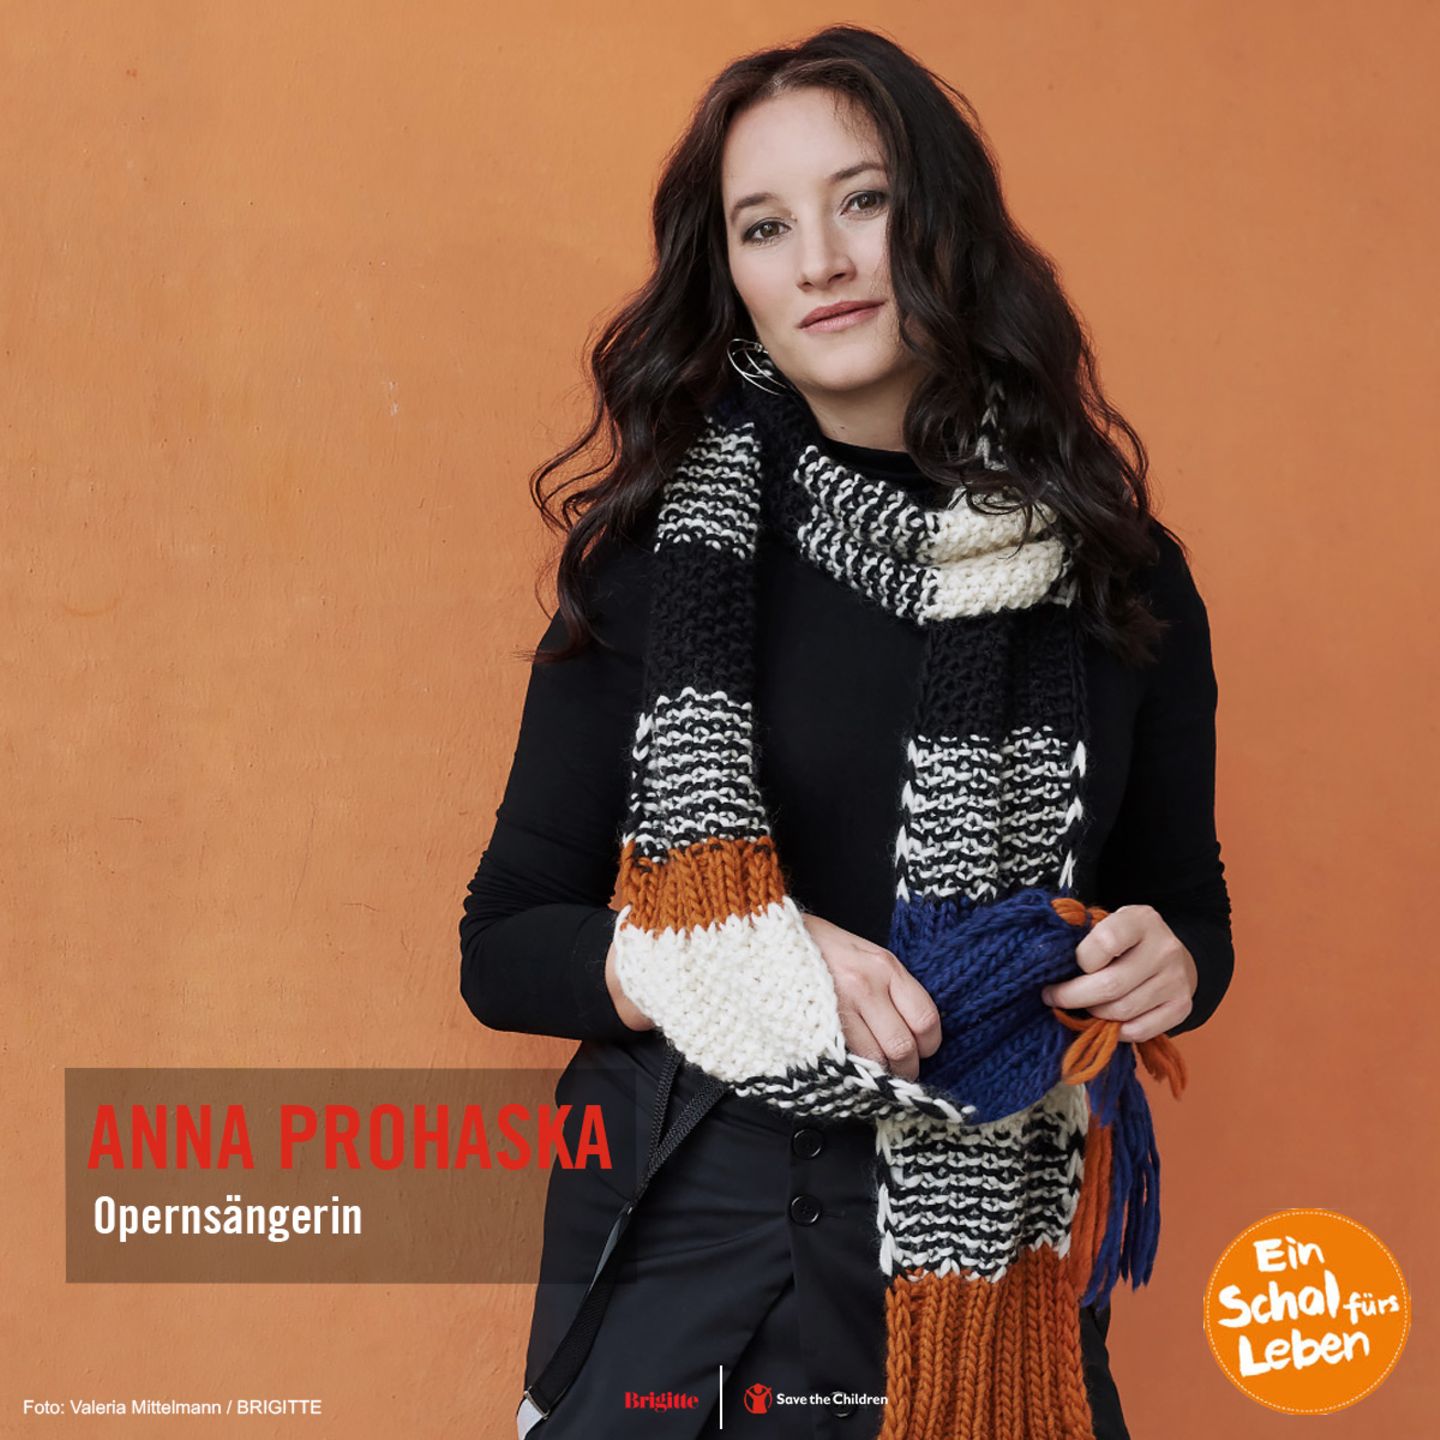 Schal fürs Leben: Anna Prohaska